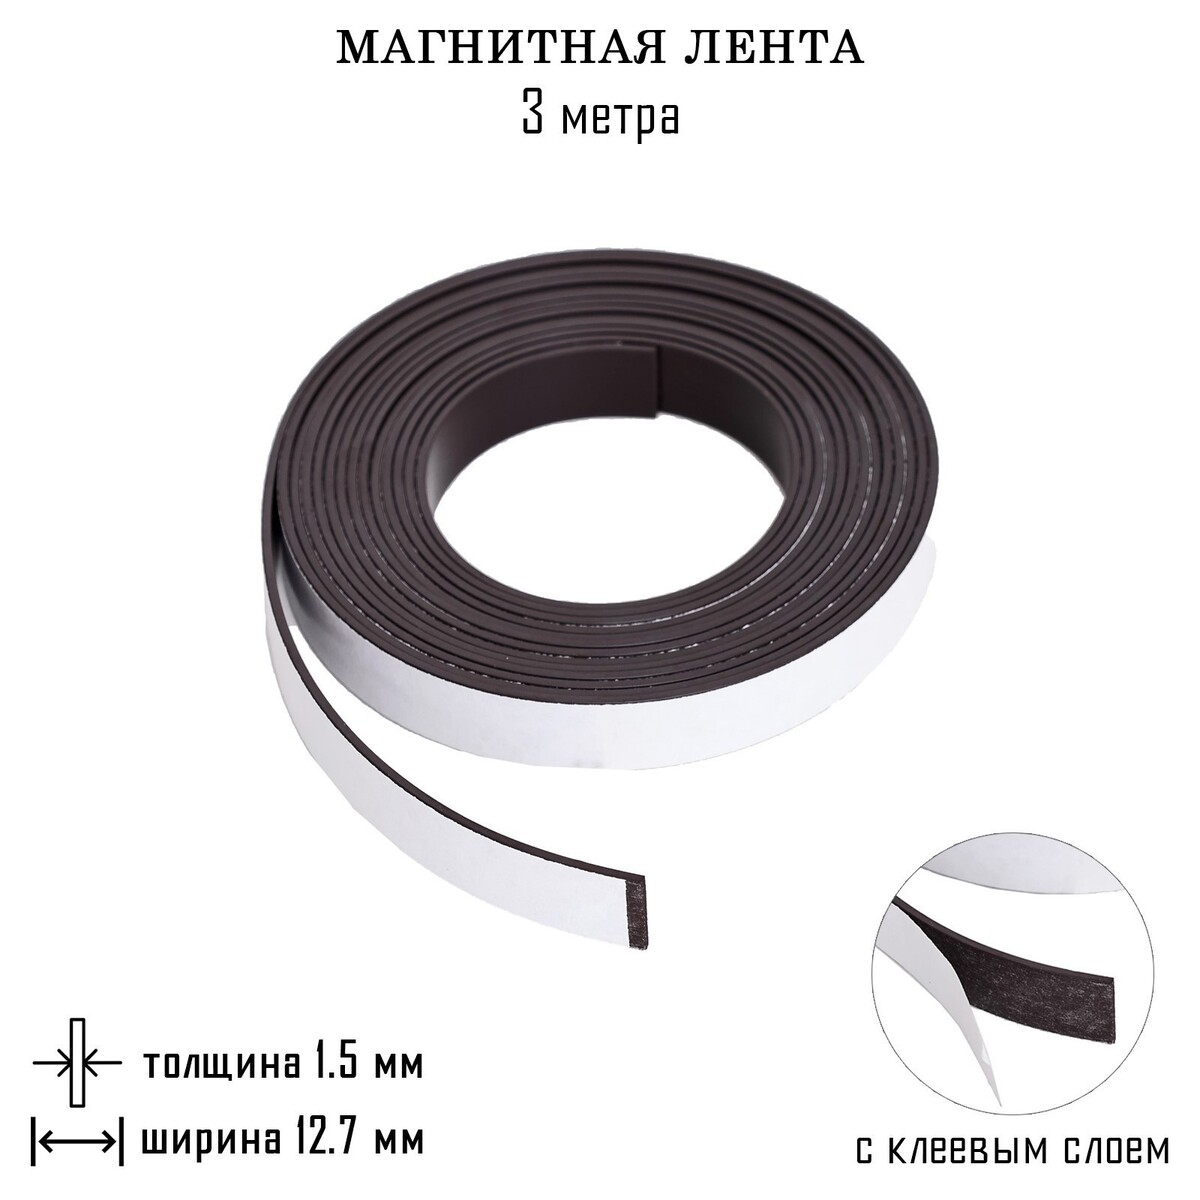 Магнитная лента, с клеевым слоем, 3 метра, толщина 1.5 мм, ширина 12.7 мм магнитный винил с клеевым слоем а4 2 шт толщина 0 8 мм 21 х 29 7 см